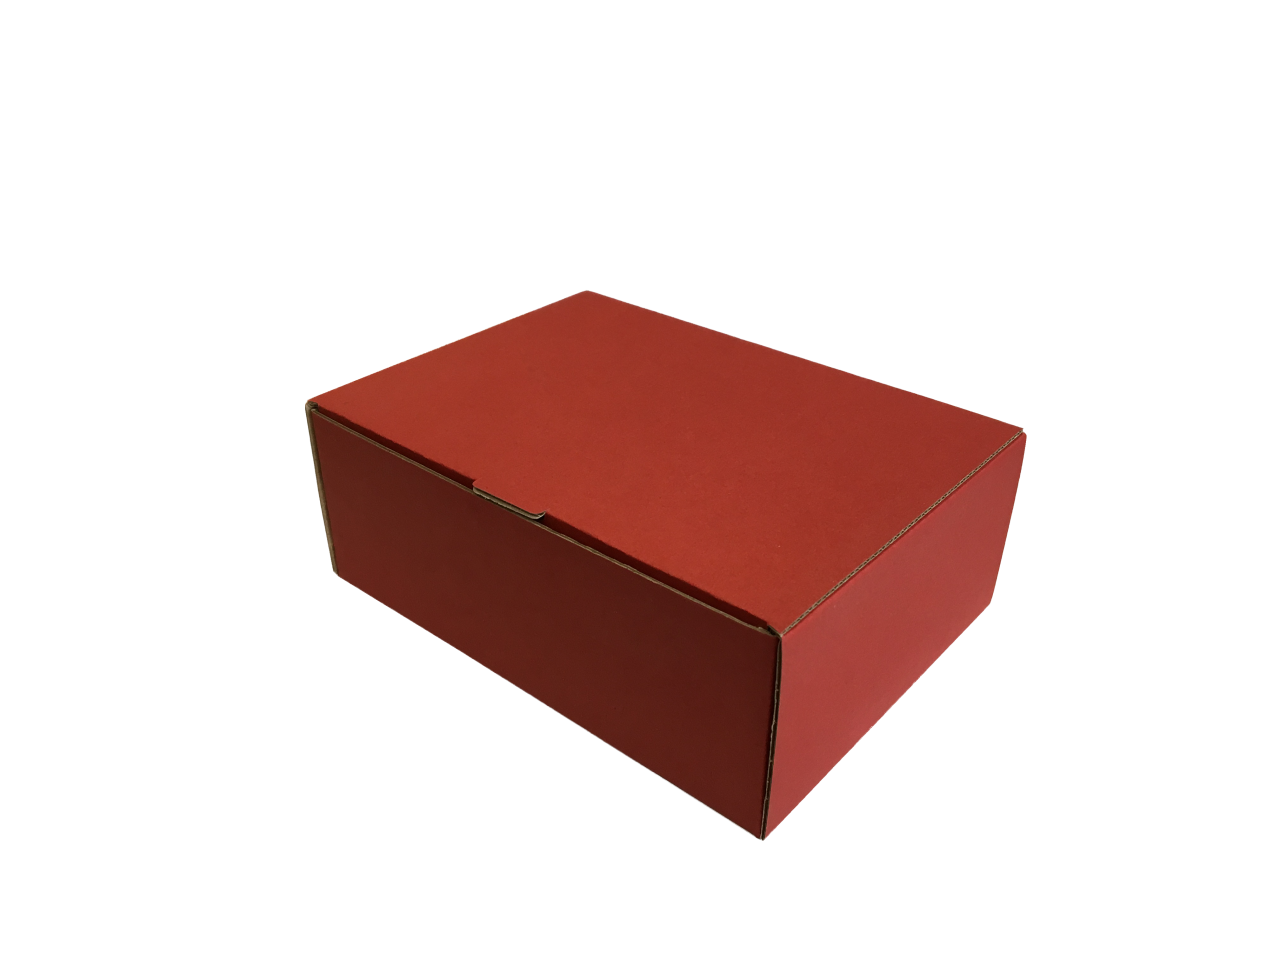 Színes kis méretű önzáró tároló doboz (160x120x60 mm) Színes kis méretű, önzáródó, hullámkarton tároló doboz felnyitható tetővel

Felhasználás: 
Kisméretű tárgyak tárolására alkalmas kisméretű önzáródó színes hullámkarton tároló doboz.

Méret: 160 x 120 x 60 mm - hullámkarton tároló doboz
Kivitel: Fefco 0421

Anyag: mikrohullám karton papír
Színek: bordó, fekete, kék, zöld